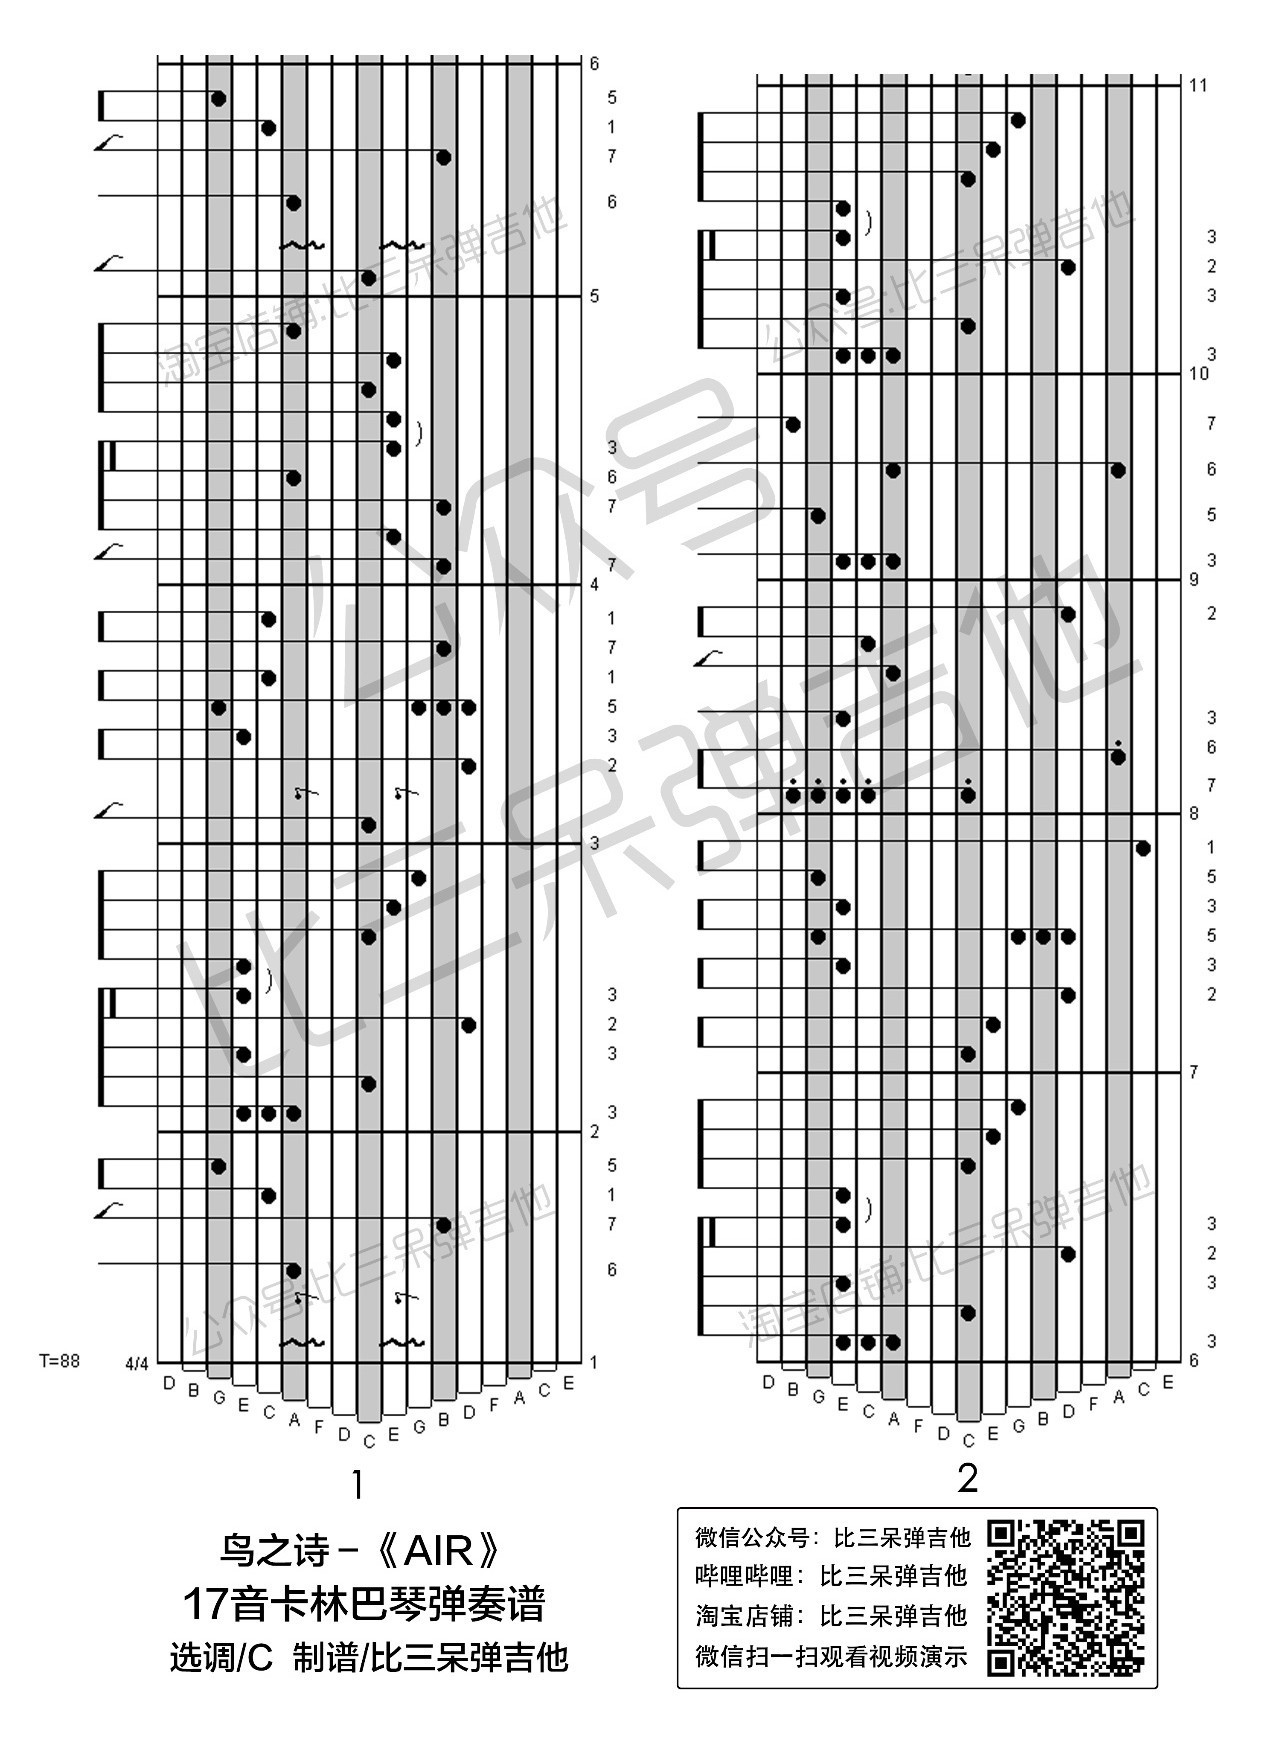 改编后的拇指琴专用谱在下方 谱子右侧小数字主旋律所对应的简谱